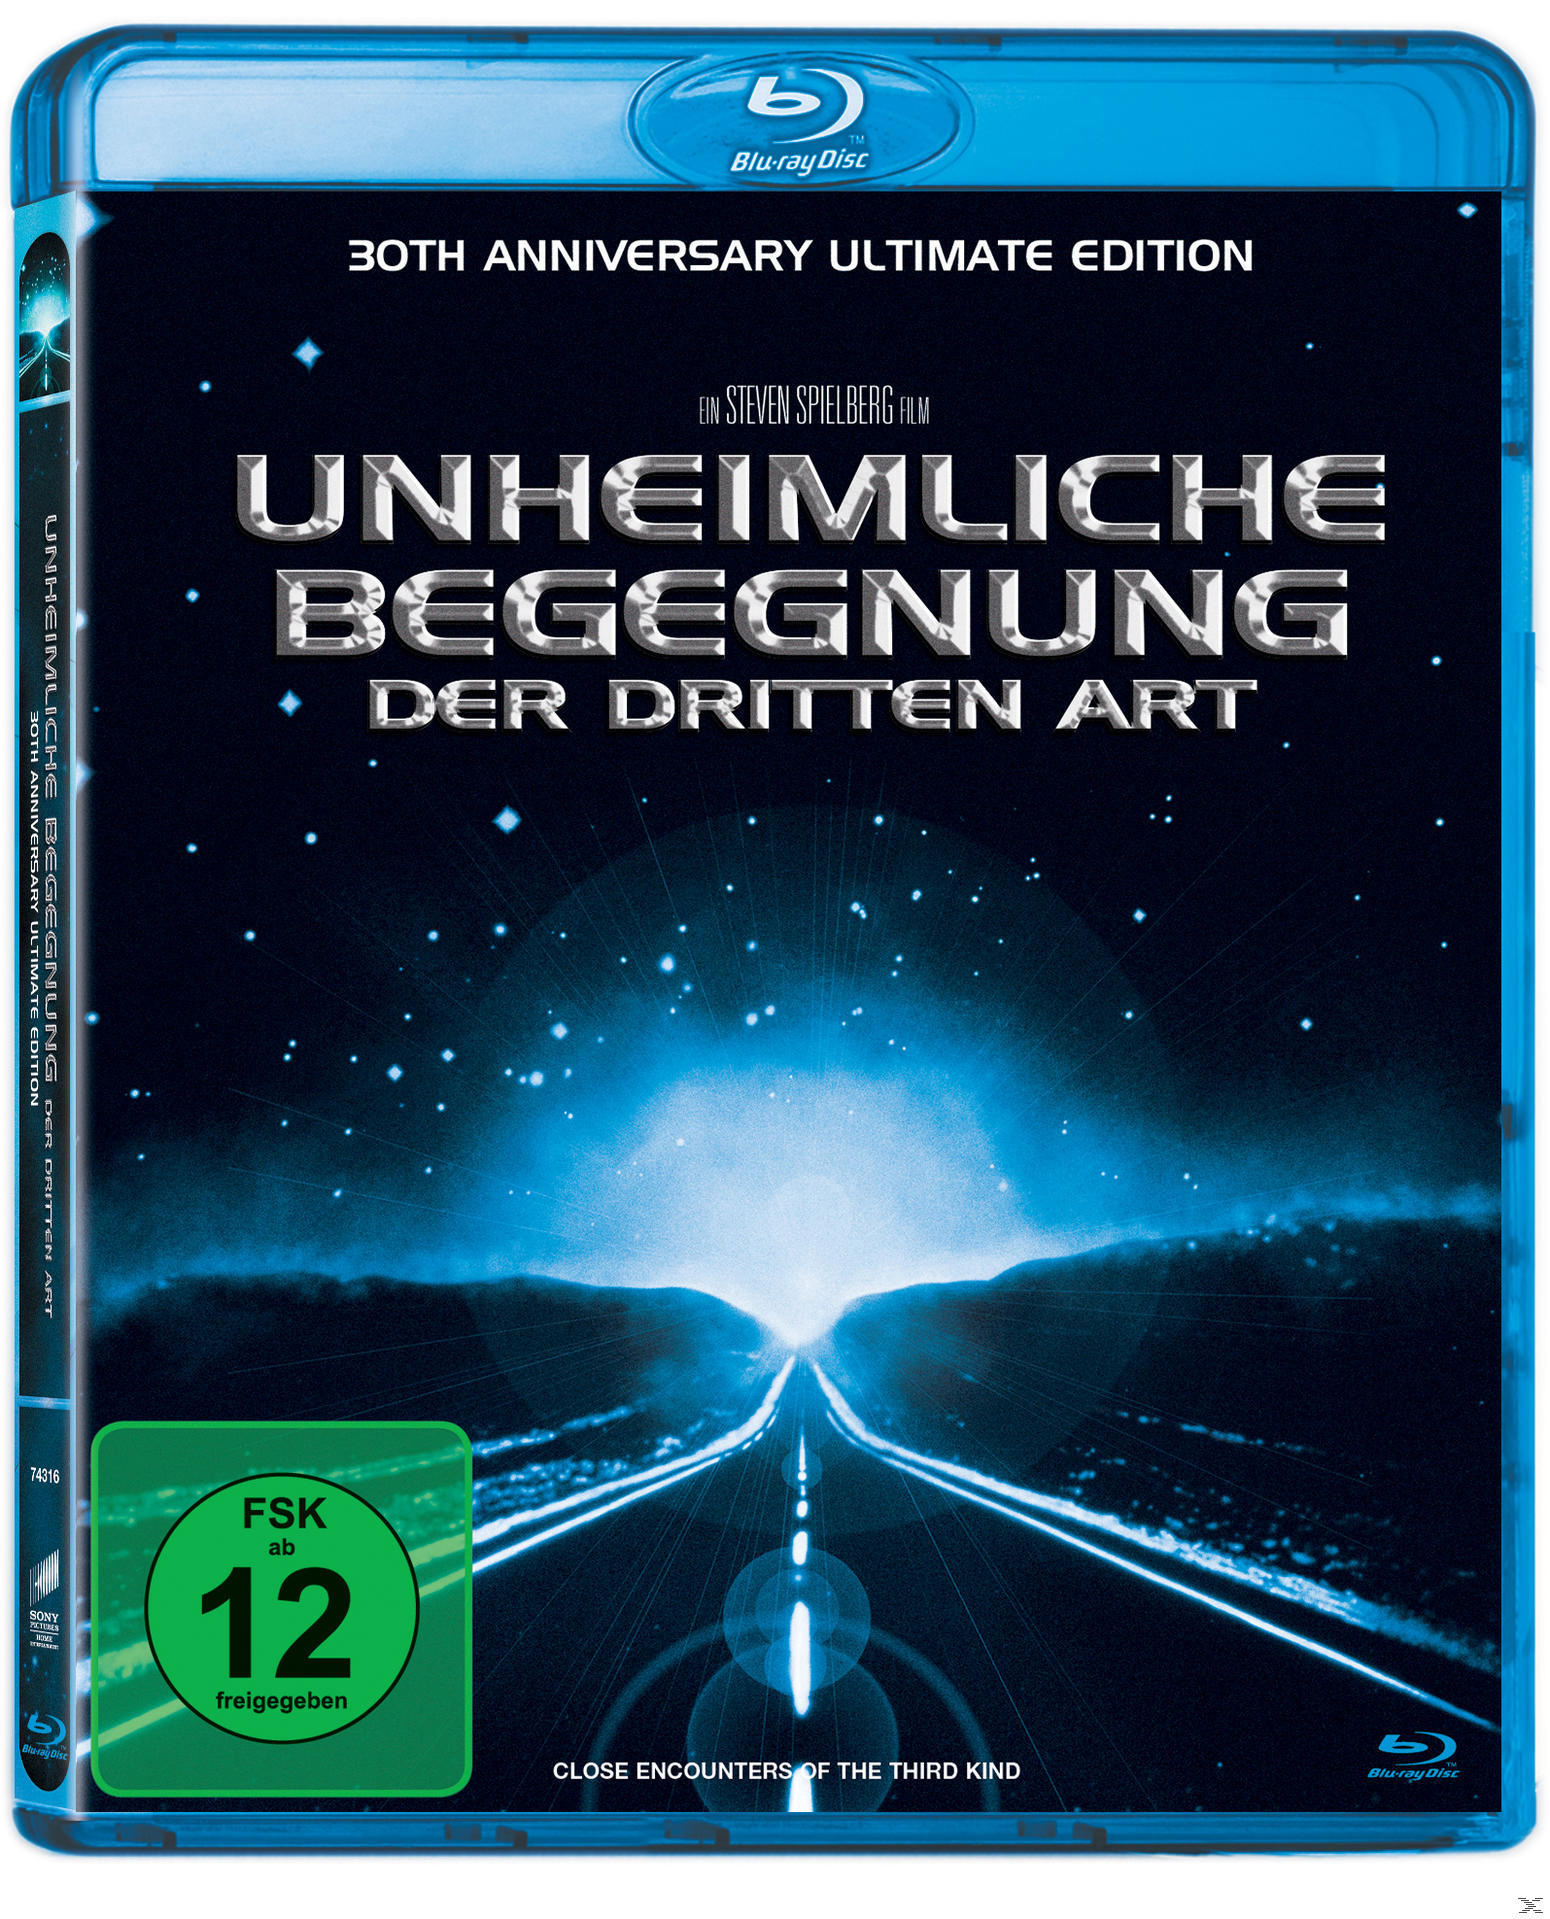 Anniversary Edition) Blu-ray Begegnung Art Ultimate (30th der dritten Unheimliche